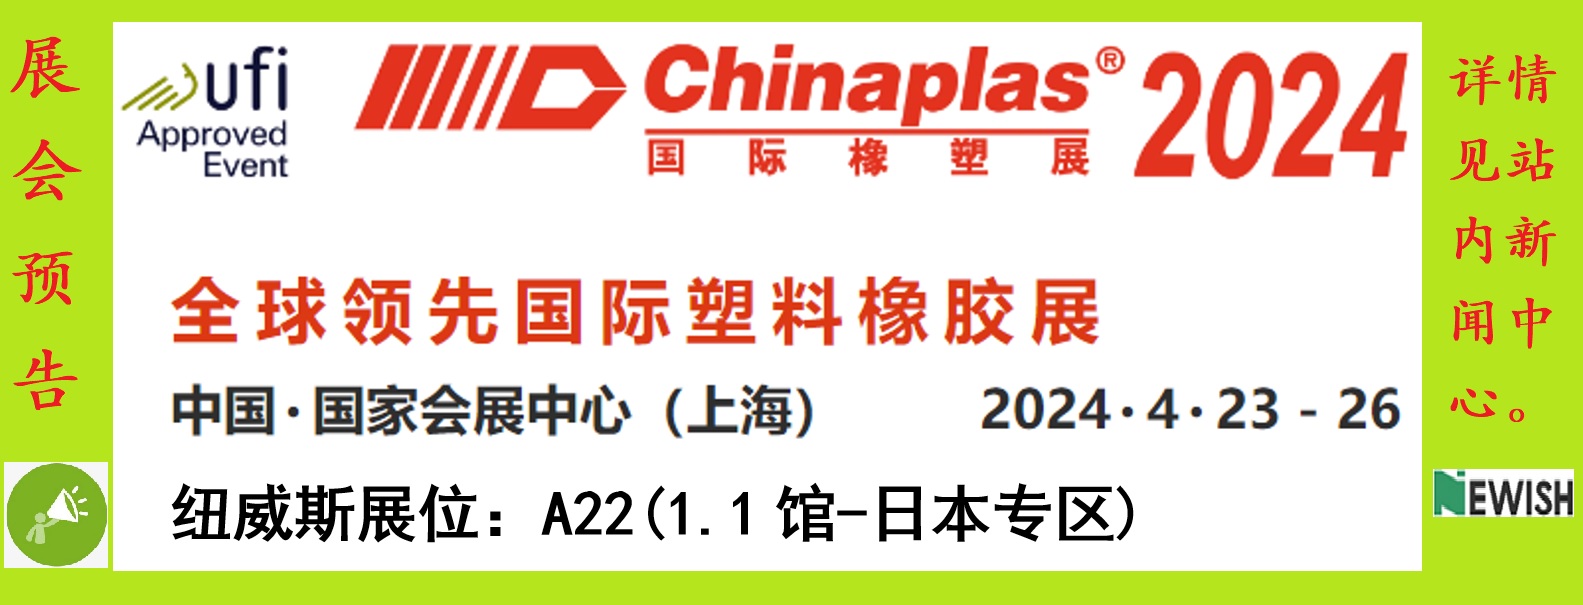 诚邀莅临「CHINAPLAS 2024国际橡塑展」